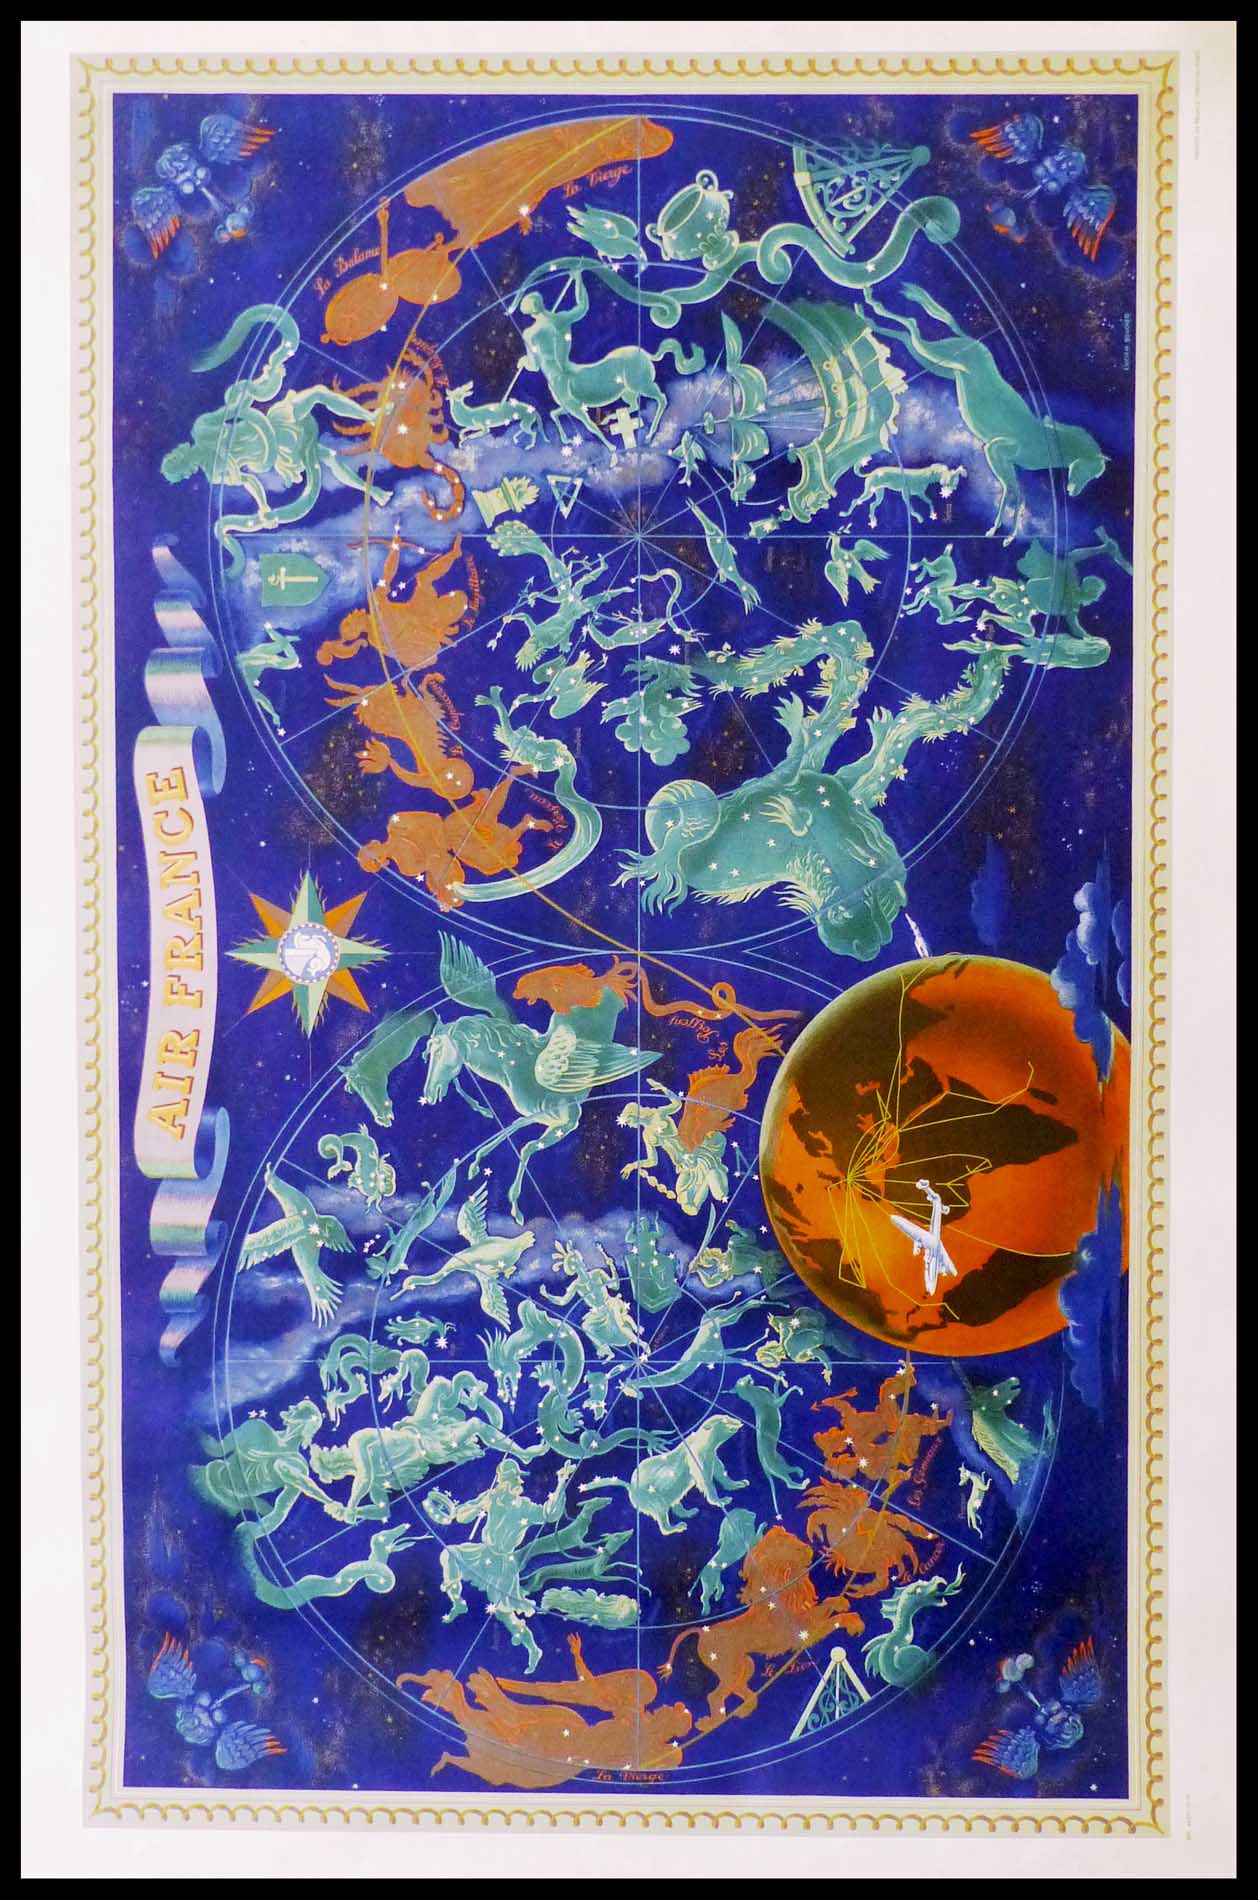 (alt="Affiche originale Air France Zodiaque Nuit des constellations size 109.2 x72 cm Lucien Boucher Imprimerie Perceval 1946")